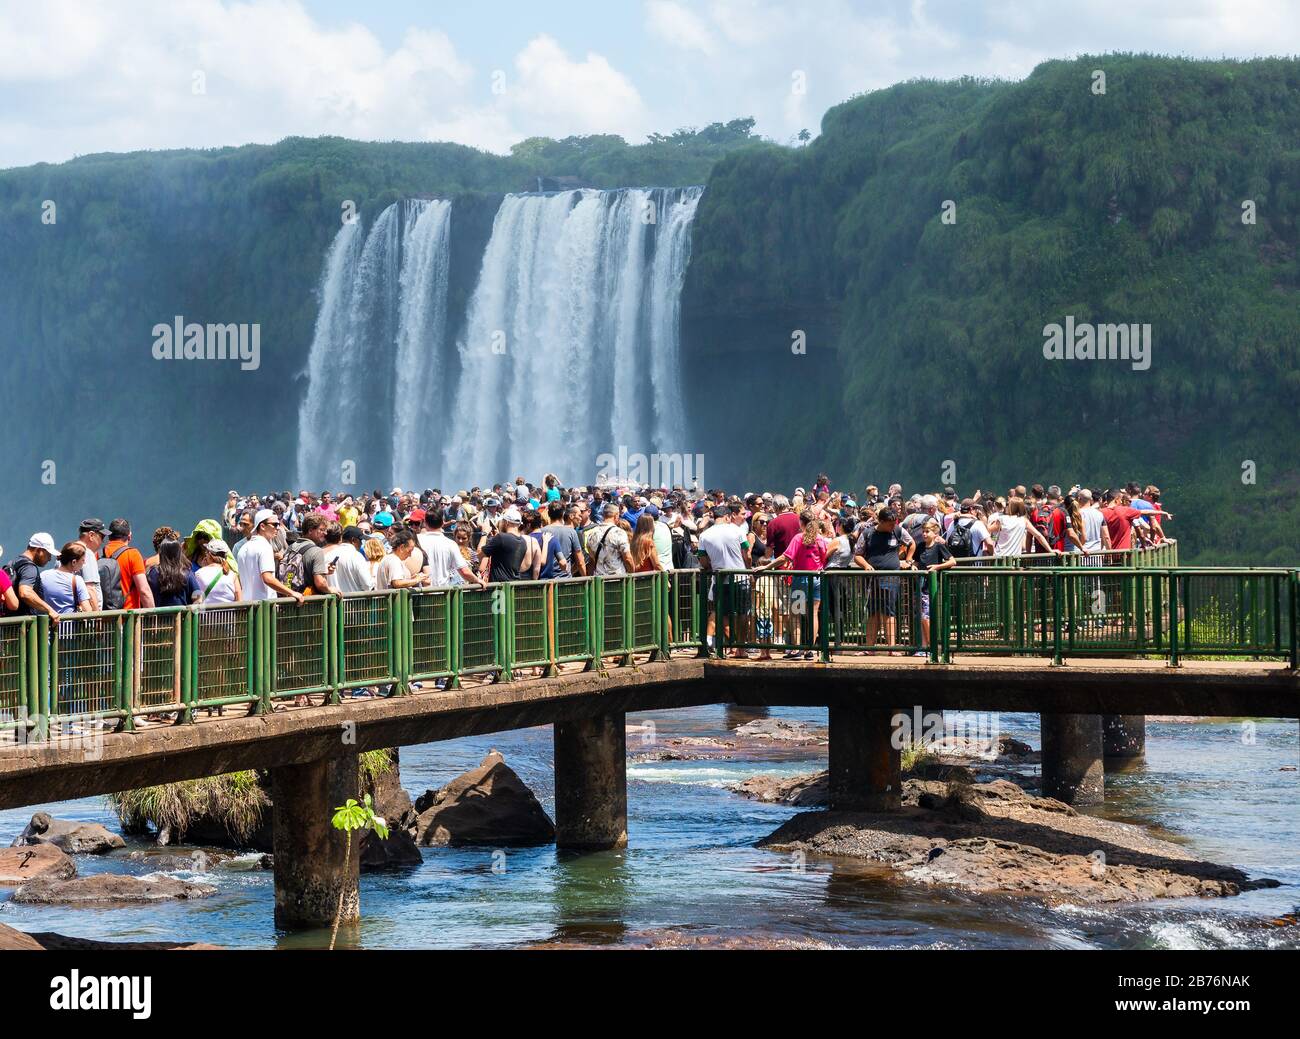 Riesige Touristenmassen an den Iguassu Wasserfällen, auch bekannt als Cataratas do Iguaçu in Brasilien. Mehrere Touristen, die den Tourismus überflüglten. Stockfoto